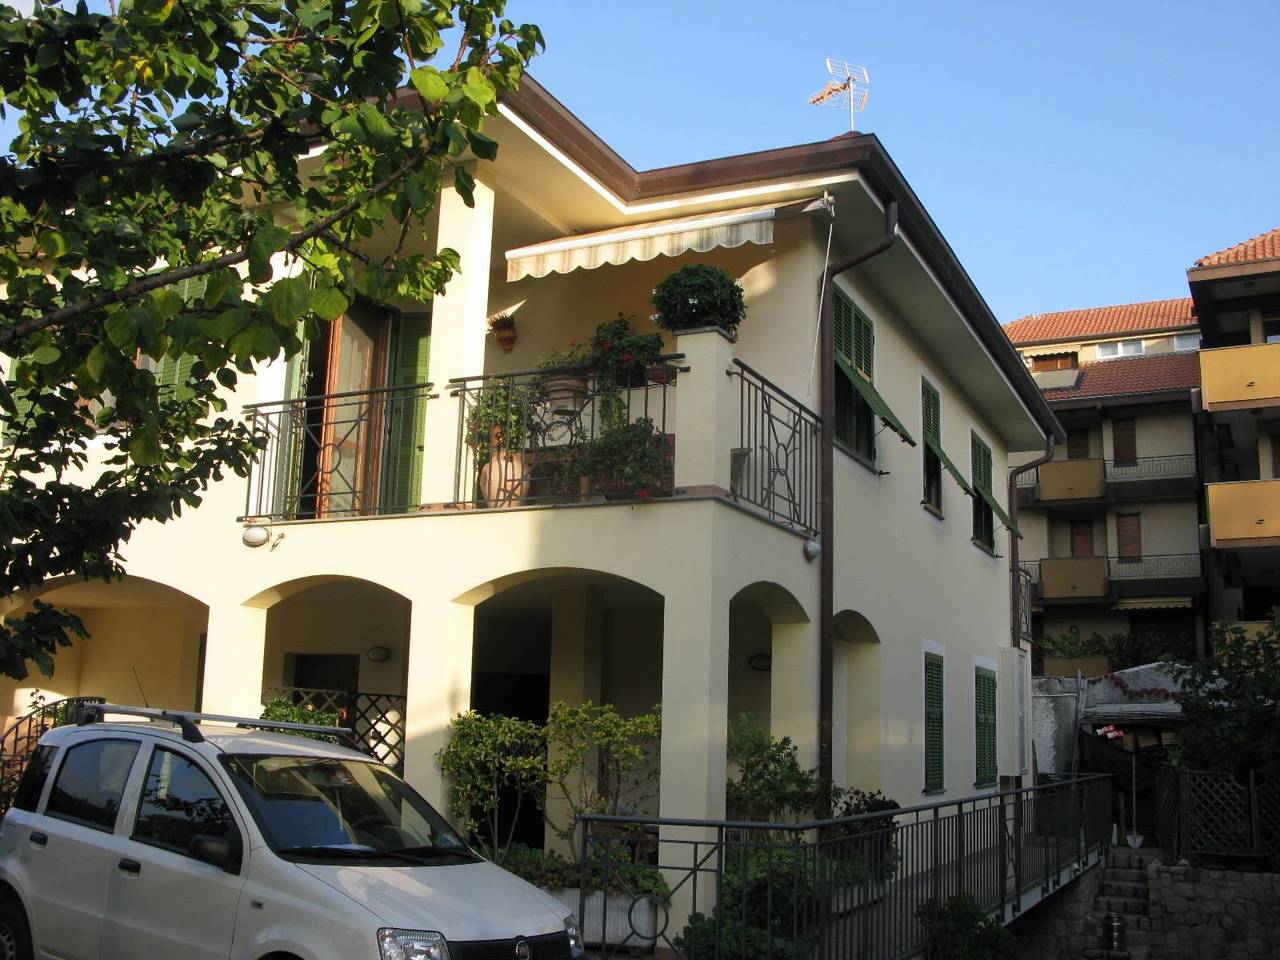 A vendre villa in ville Bordighera Liguria